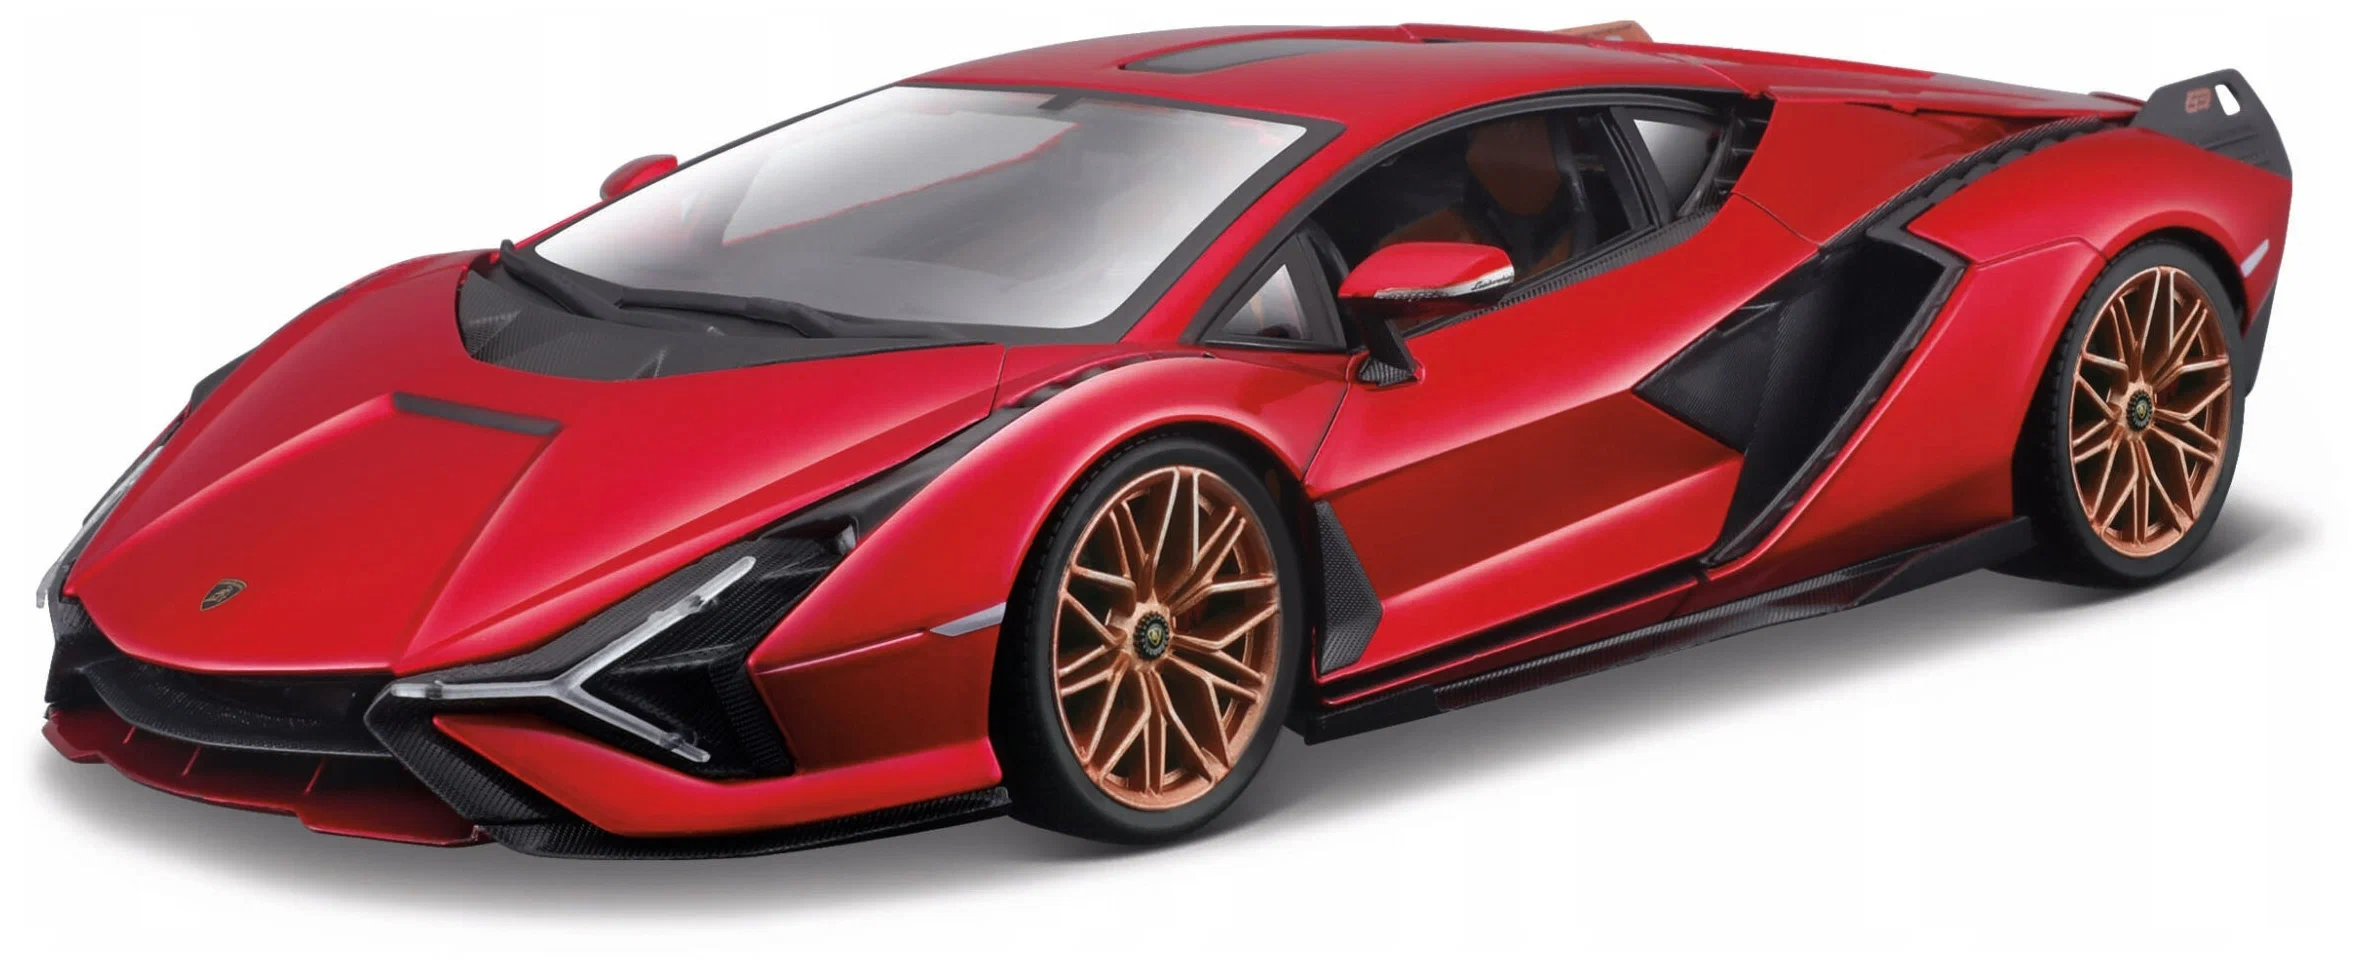 Машинка Bburago металлическая Lamborghini Sian FKP 37, 1:24, красная 18-21099 игровой набор bburago city pharmacy 1 43 18 31511